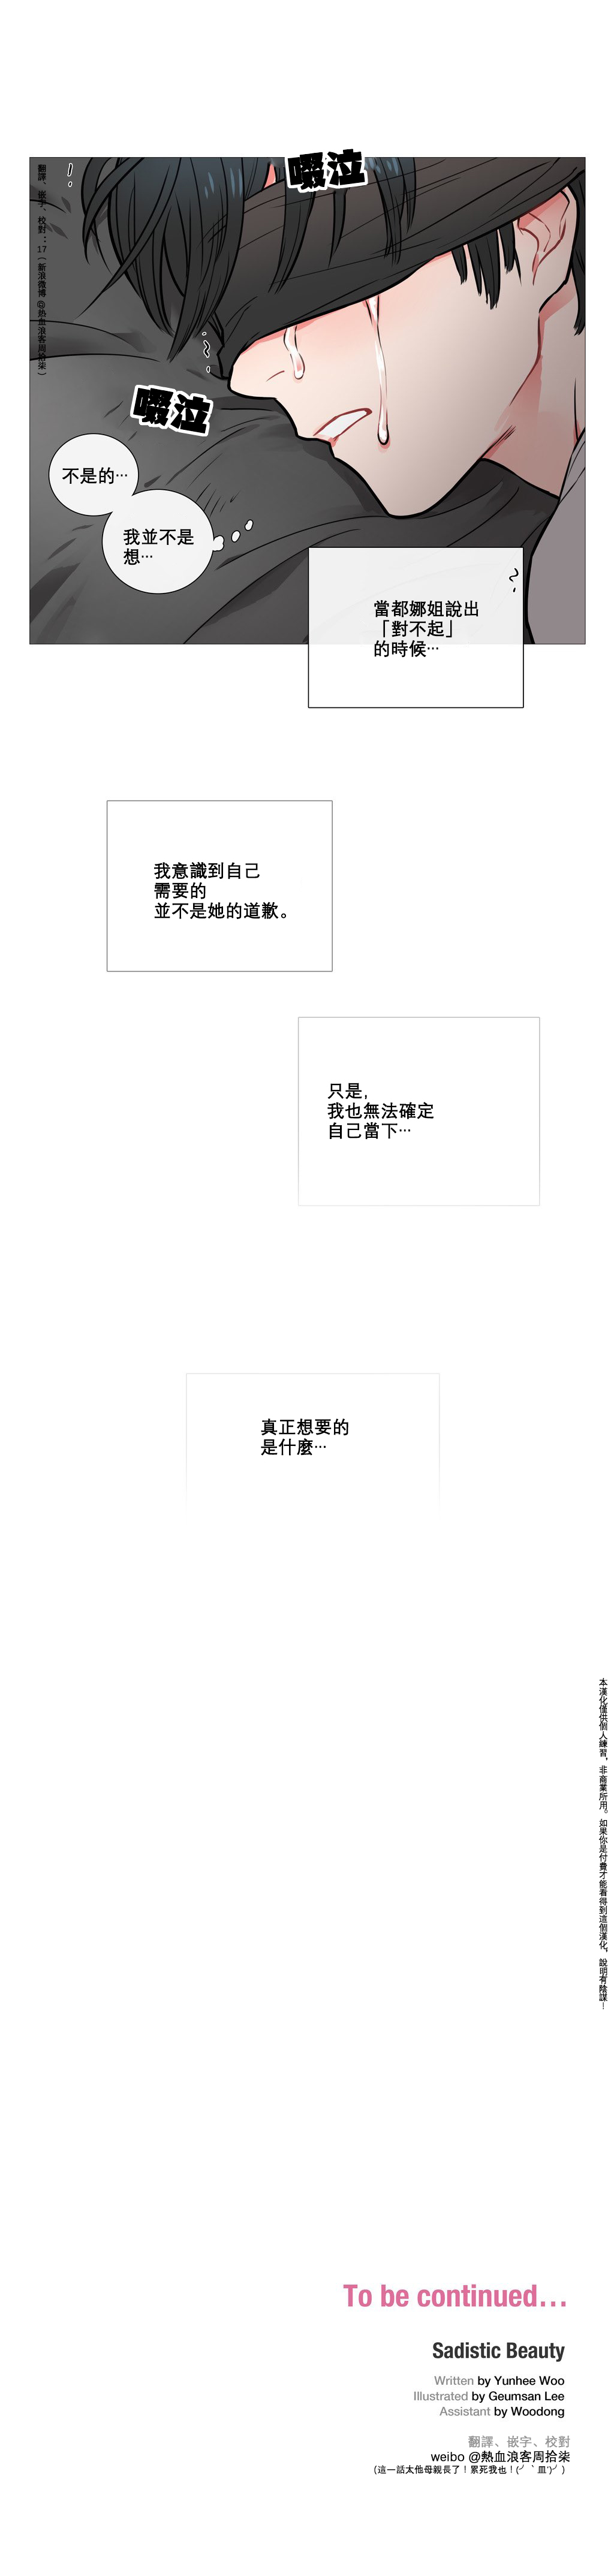 【神山】サディスティックビューティーCh.1-13【中国語】【17汉化】